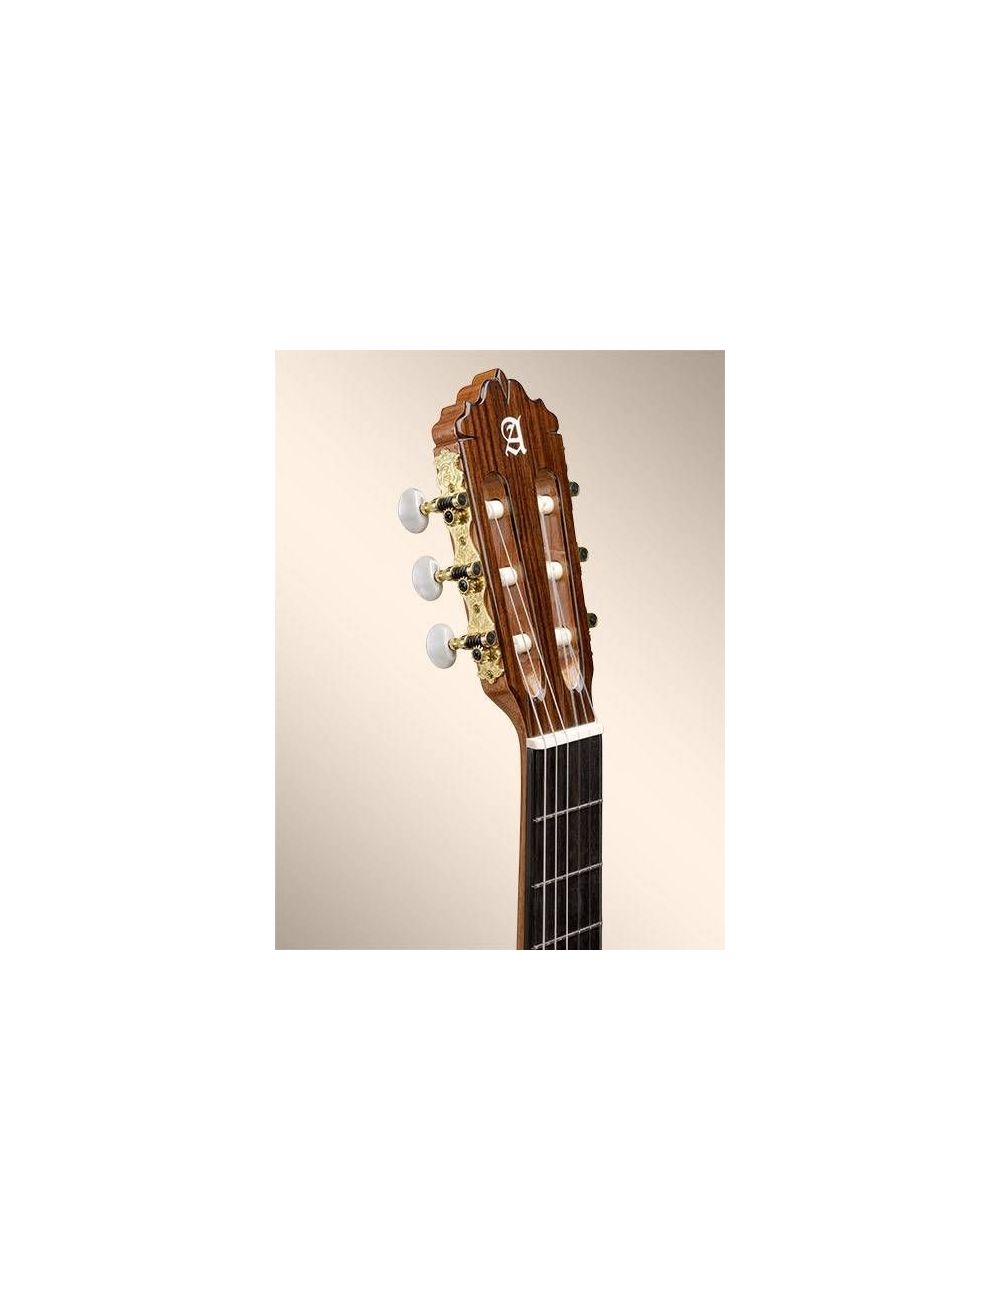 Alhambra 5P Classical Guitar 809 V Classical Studio